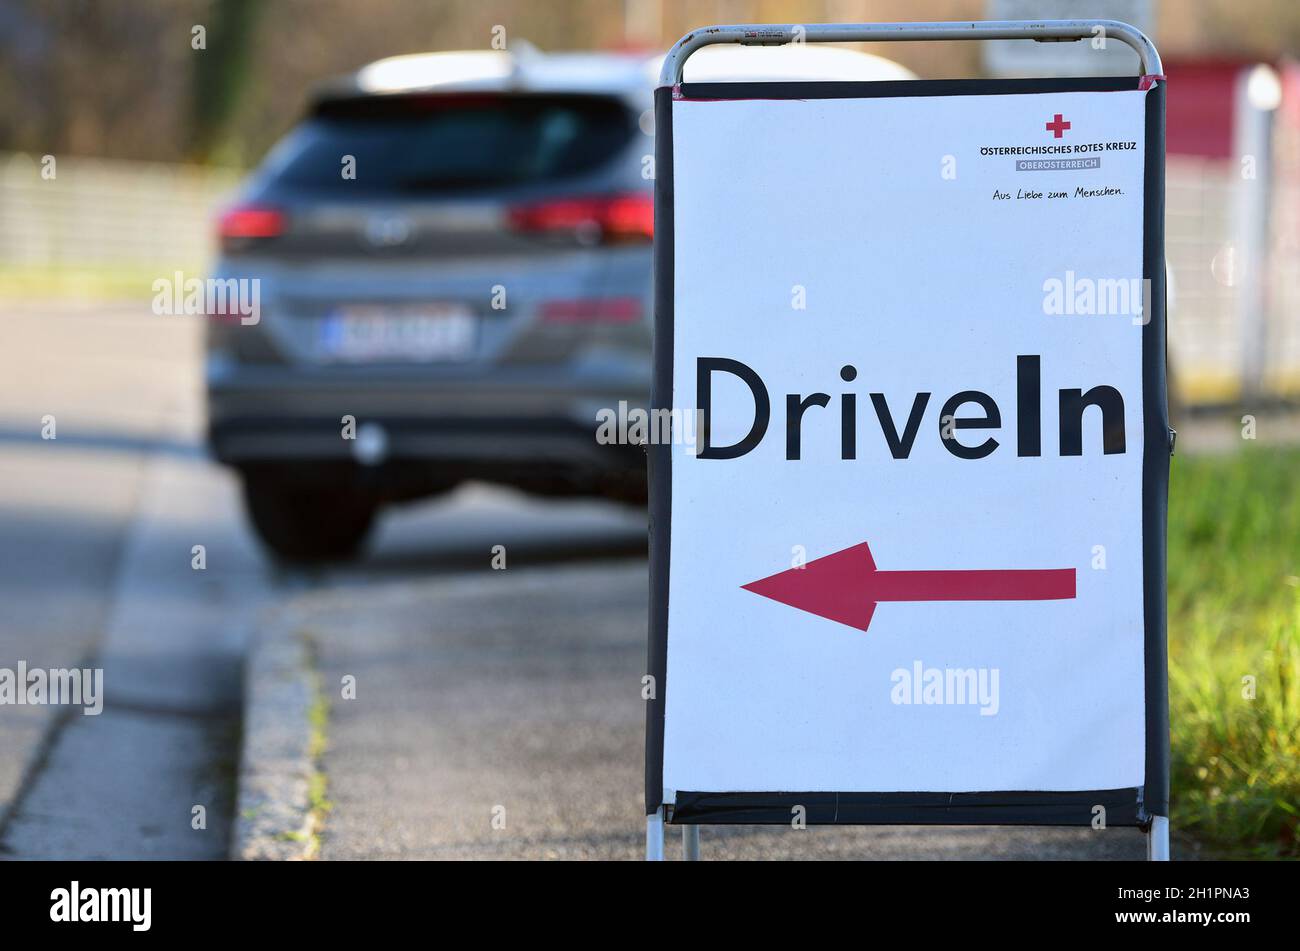 Corona Test Drive-In in Österreich (Europa) - Corona Test Drive-In in Austria (Europe) Stock Photo